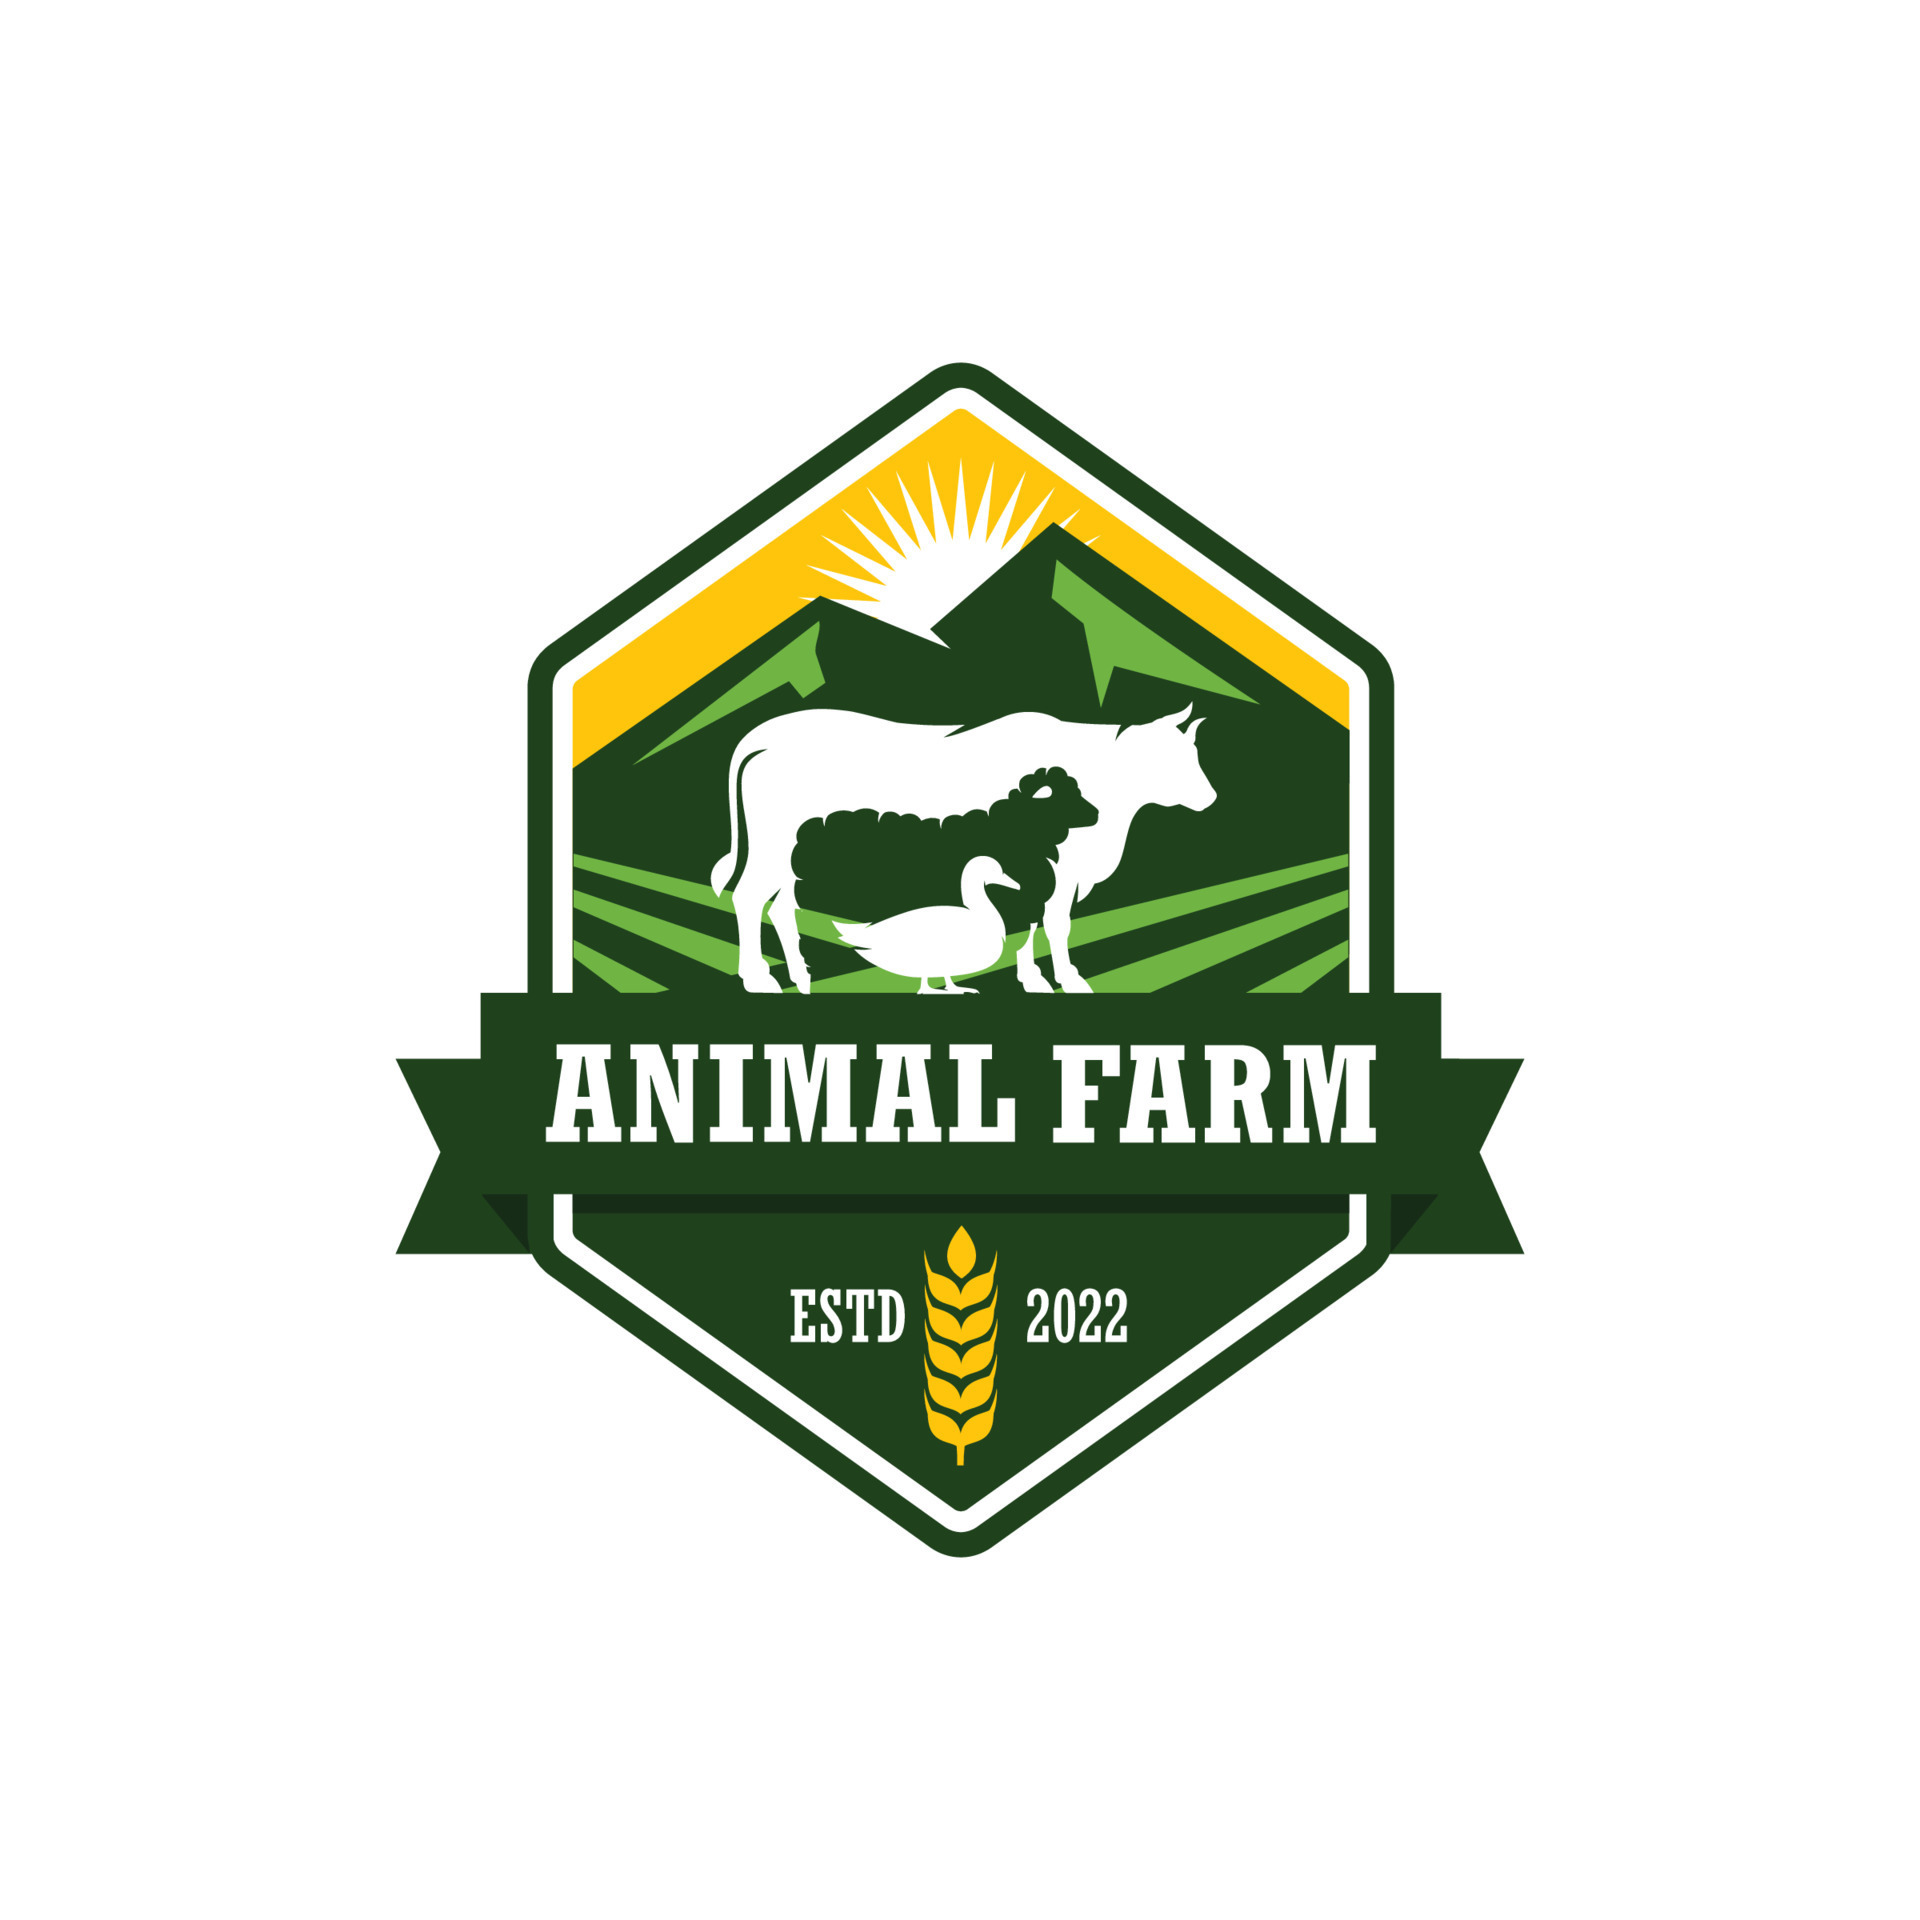 Farm animal logo design vector 12026234 Vector Art at Vecteezy